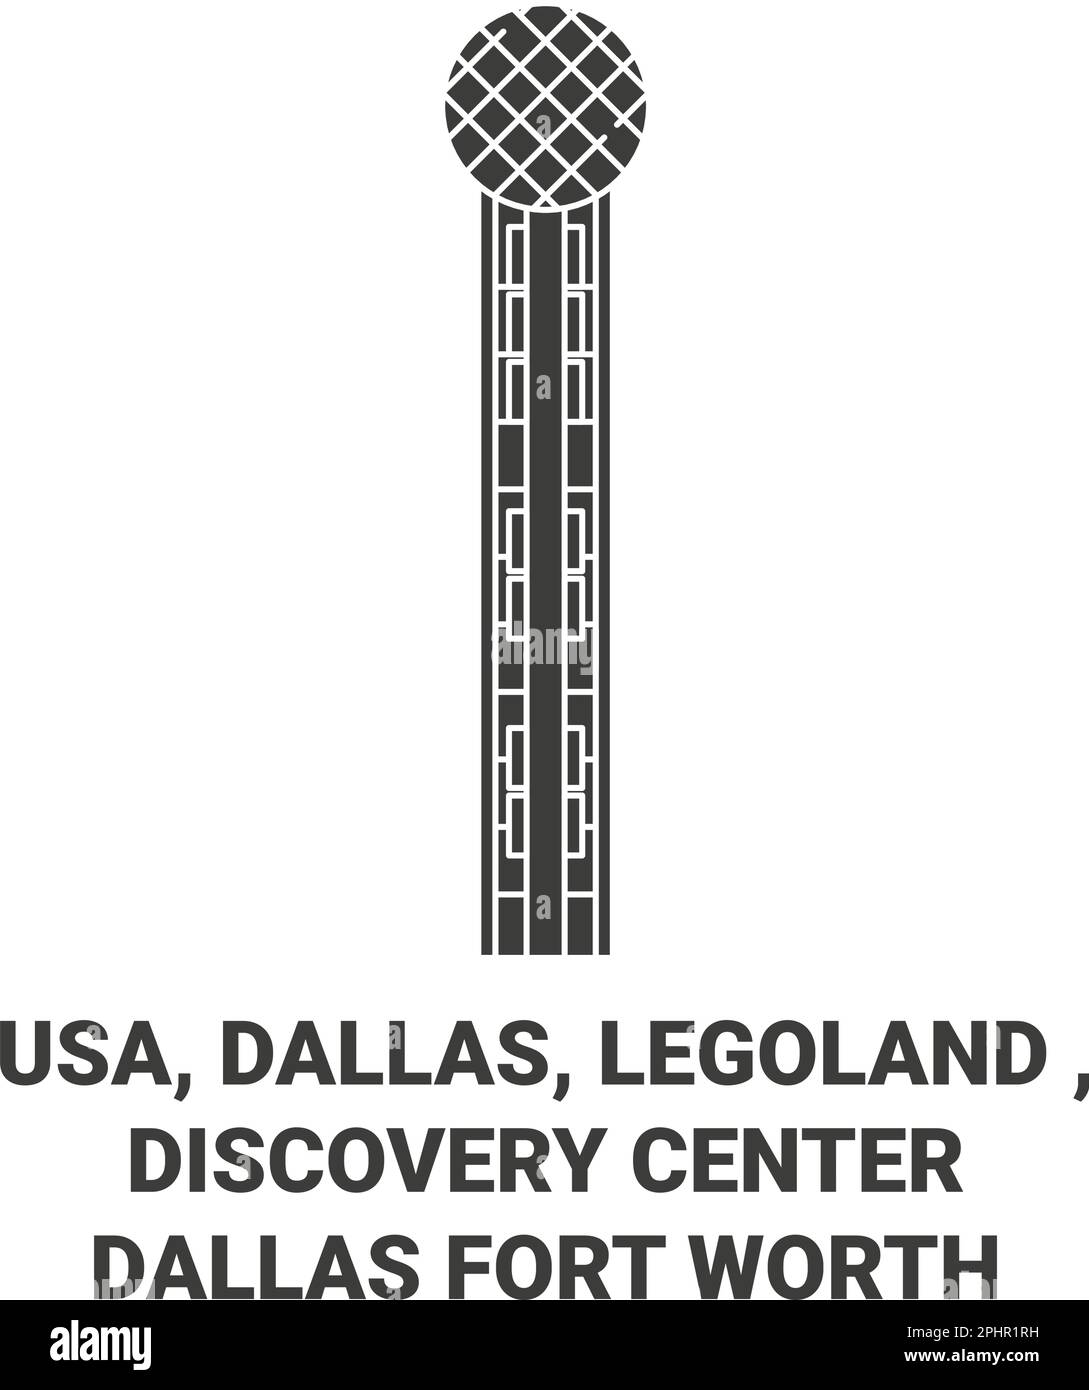 Etats-Unis, Dallas, Legoland , Discovery Center Dallas fort Worth Voyage illustration vecteur Illustration de Vecteur